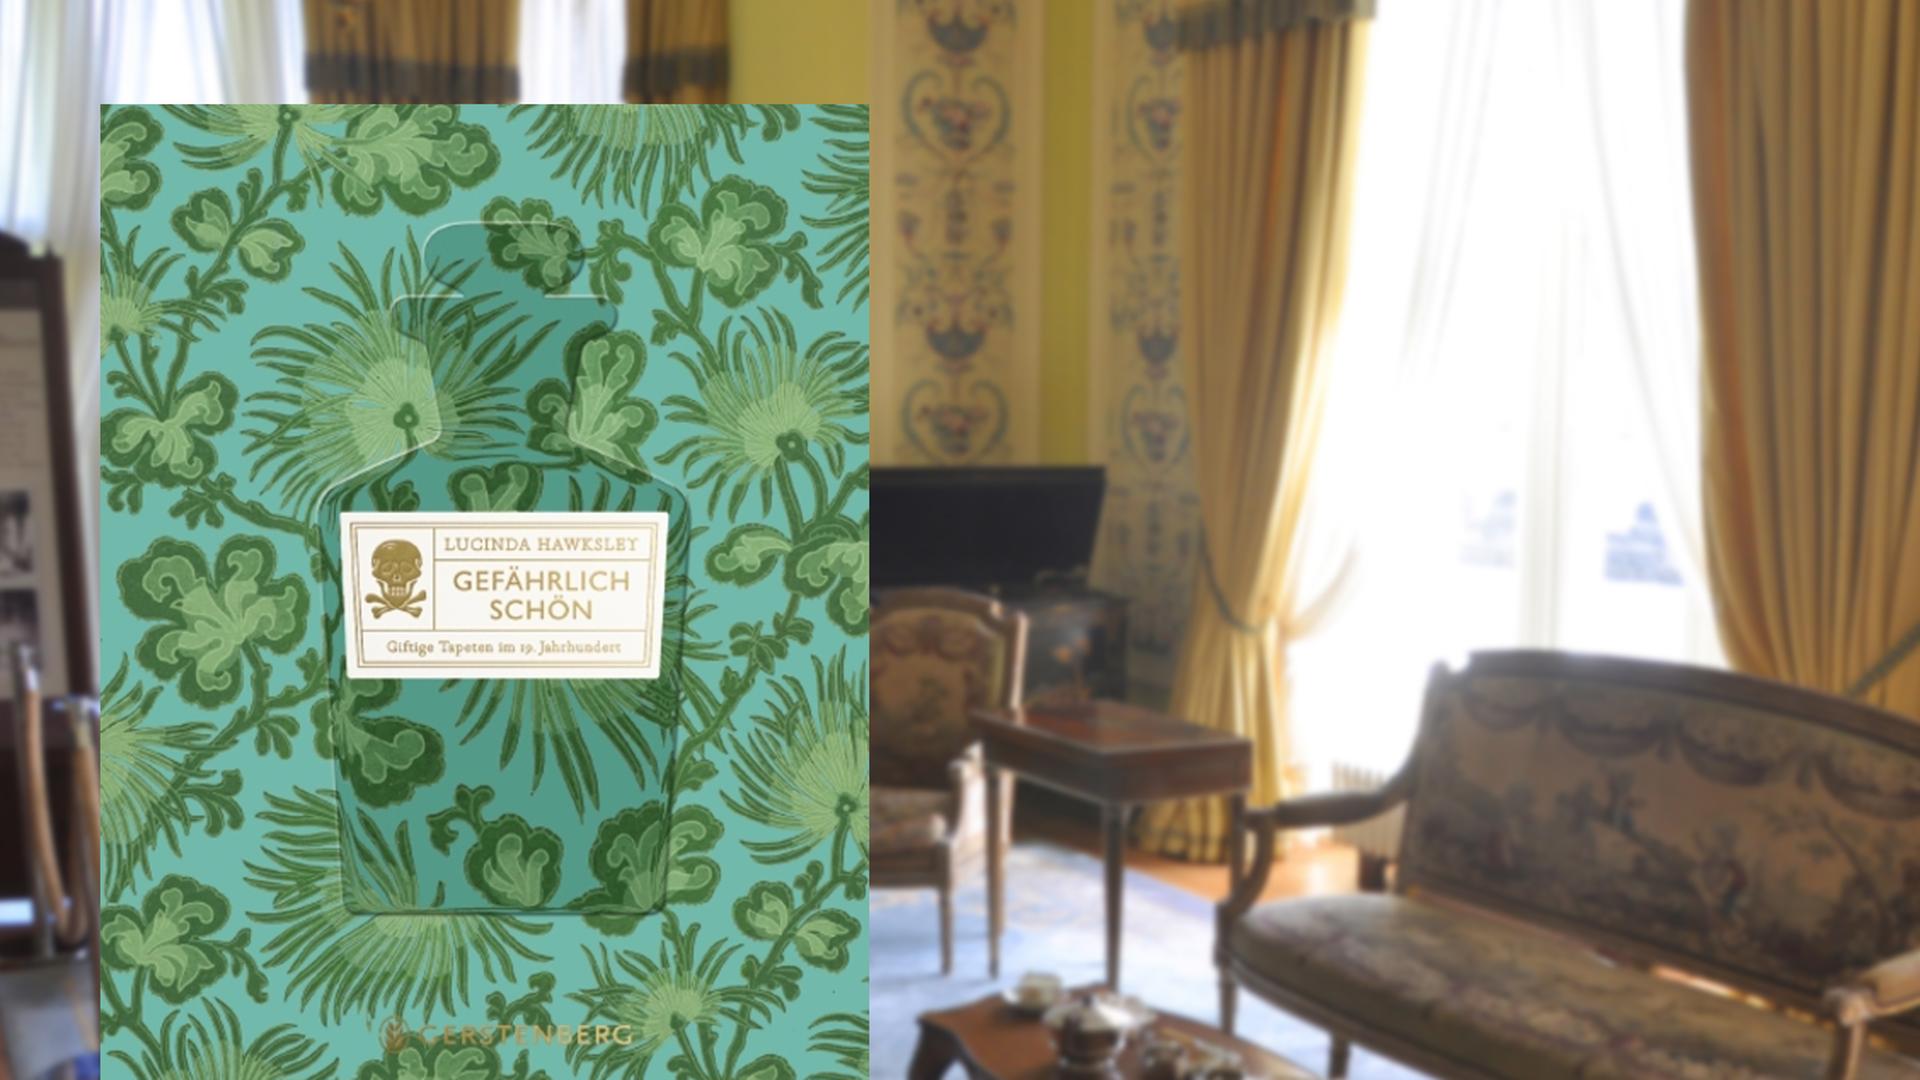 Buchcover Lucinda Hawksley: "Gefährlich schön". Im Hintergrund ein viktorianisches ausgestattetes Zimmer.